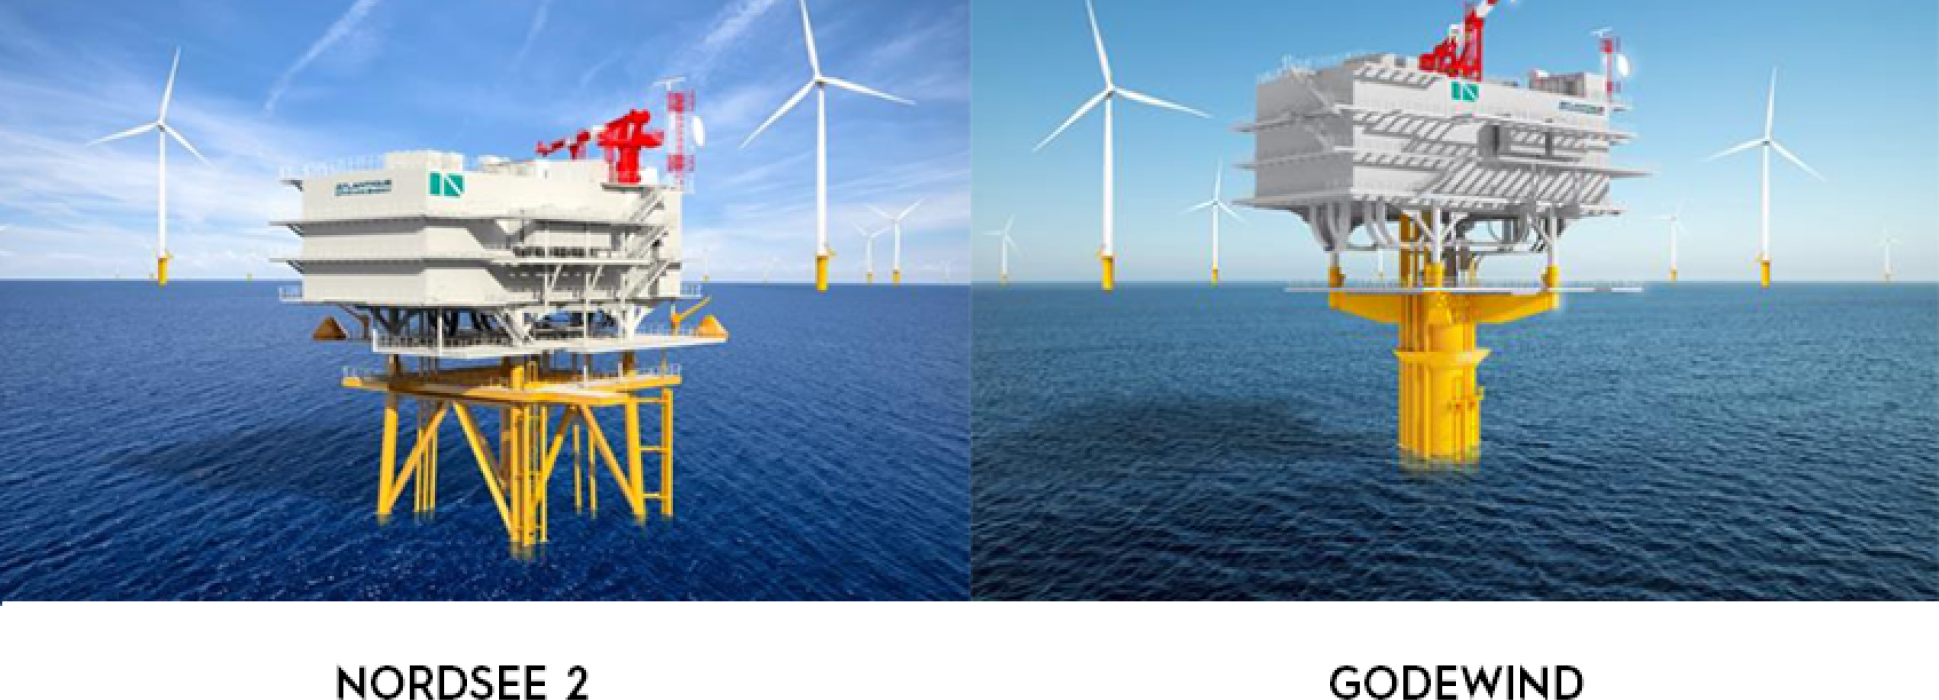 Atlantique Offshore Energy firma un importante contrato con la compañía energética alemana RWE"